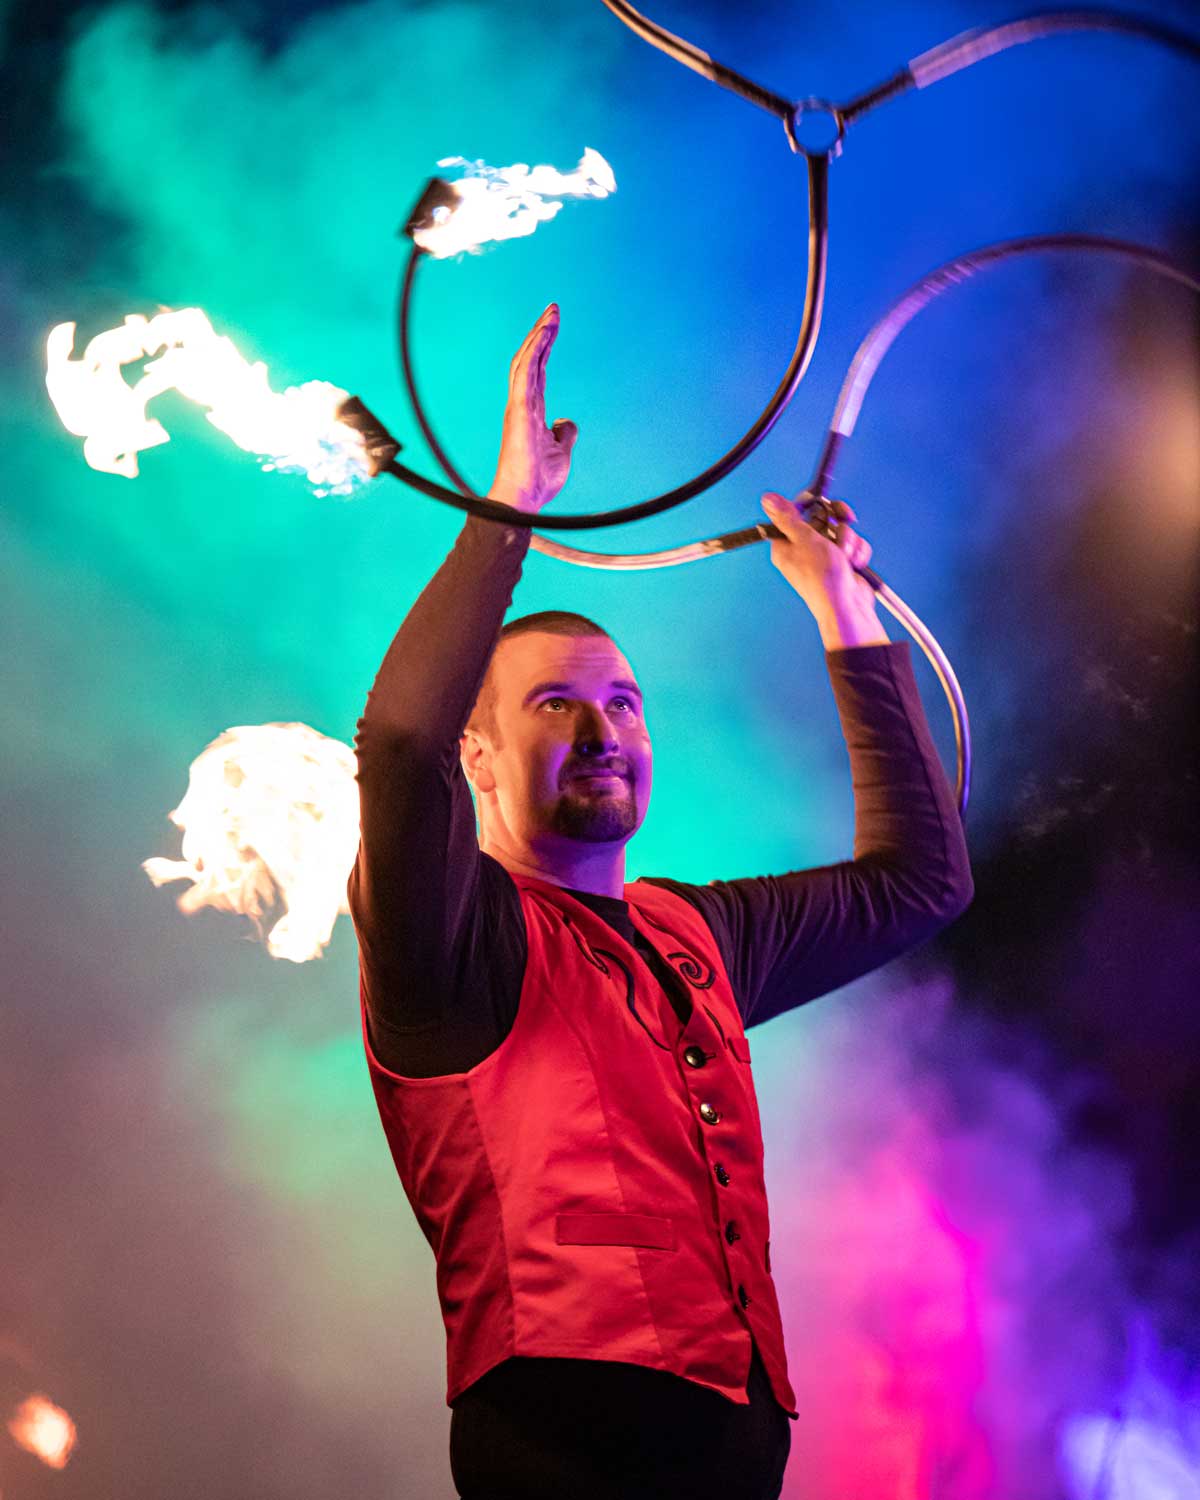 Hier jongliert ein Feuerkünstler (/images/bilder/thumbs/216_3_bild_Hochzeit_Feuershow_Feuerkunstl.jpg)